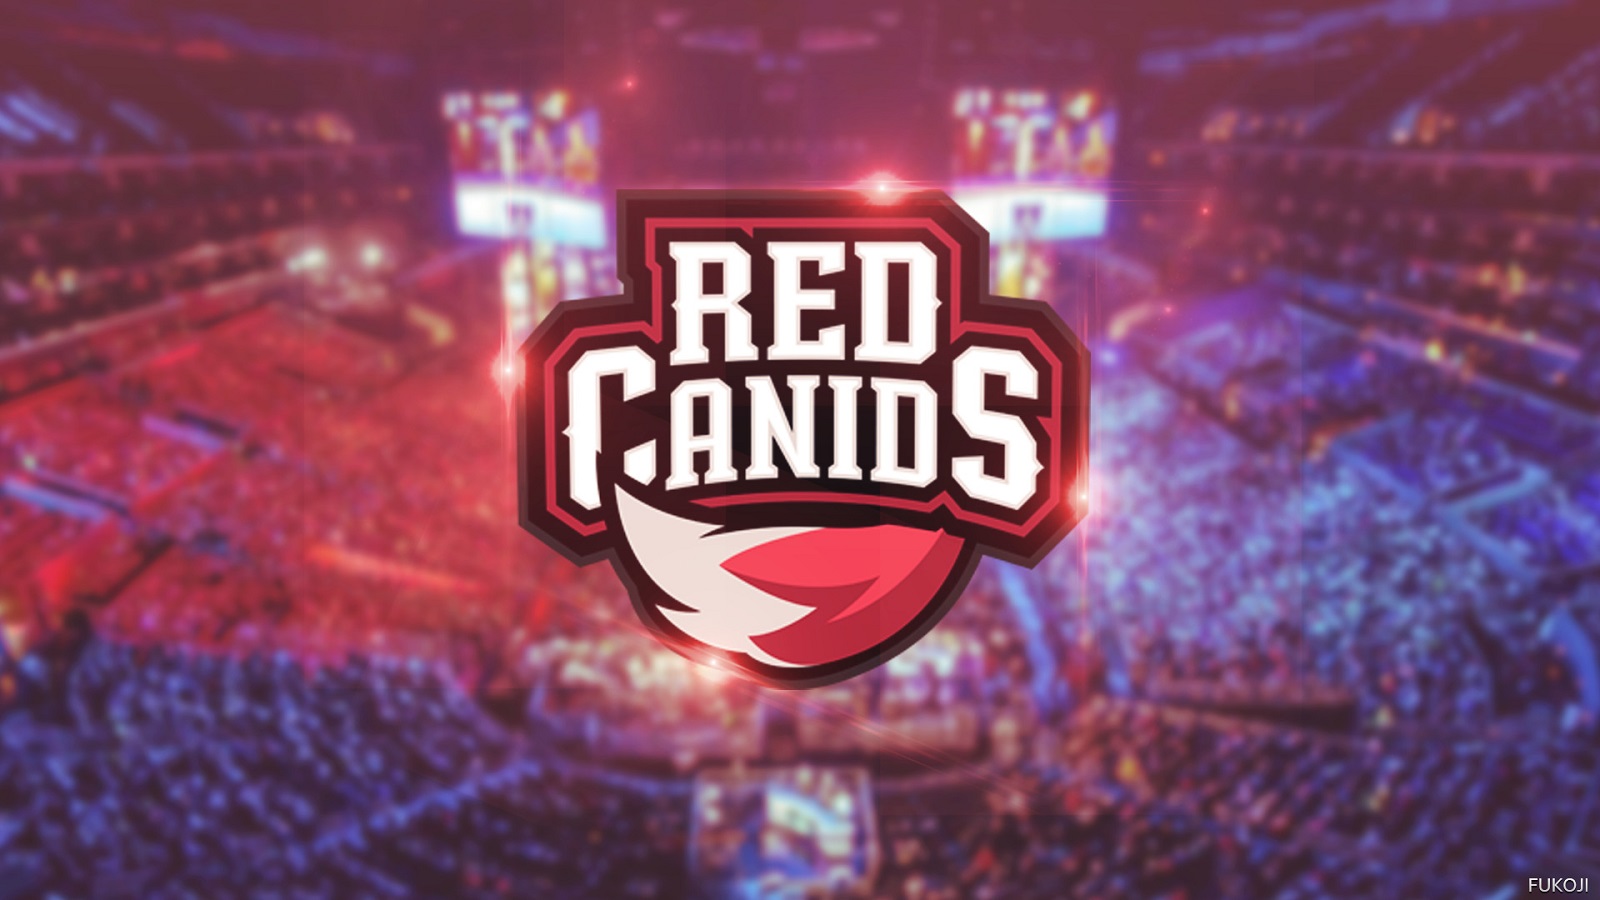 RED Canids é campeã do Brasileirão feat. Fortnite